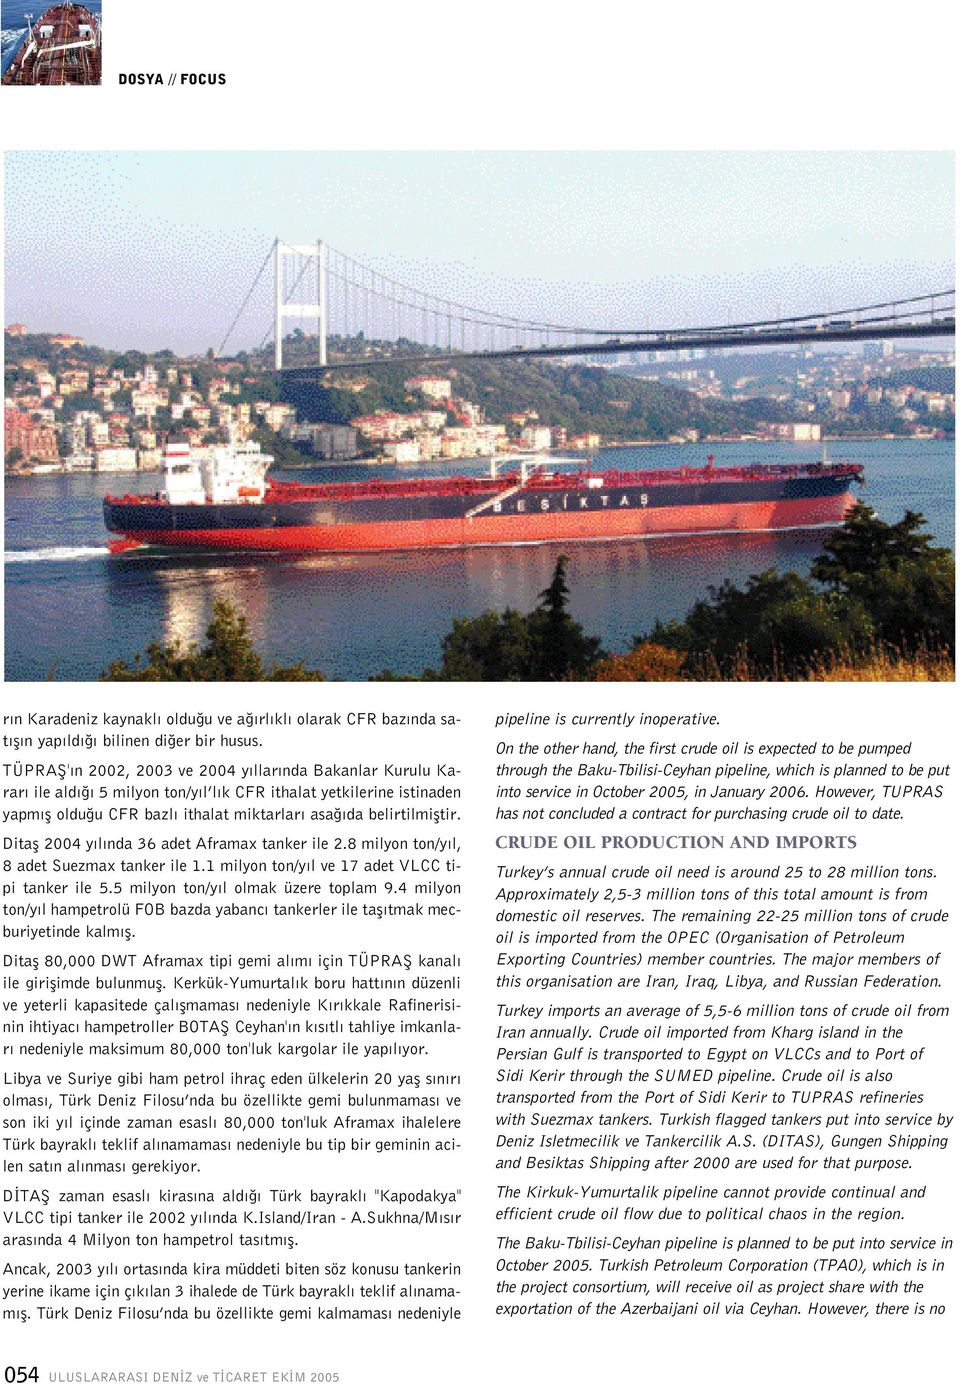 Ditafl 2004 y l nda 36 adet Aframax tanker ile 2.8 milyon ton/y l, 8 adet Suezmax tanker ile 1.1 milyon ton/y l ve 17 adet VLCC tipi tanker ile 5.5 milyon ton/y l olmak üzere toplam 9.